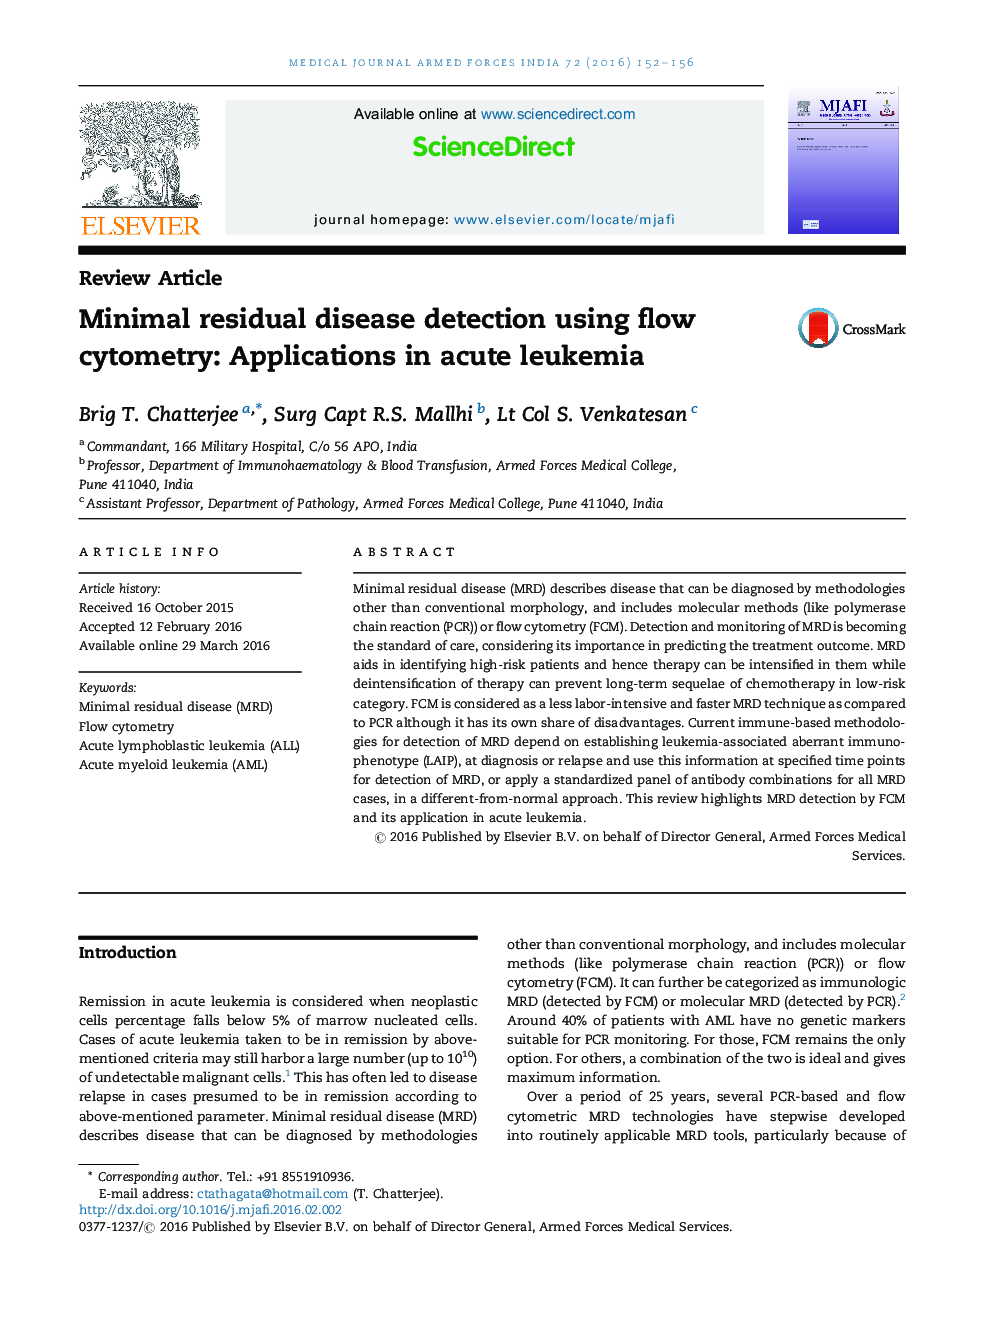 Minimal residual disease detection using flow cytometry: Applications in acute leukemia